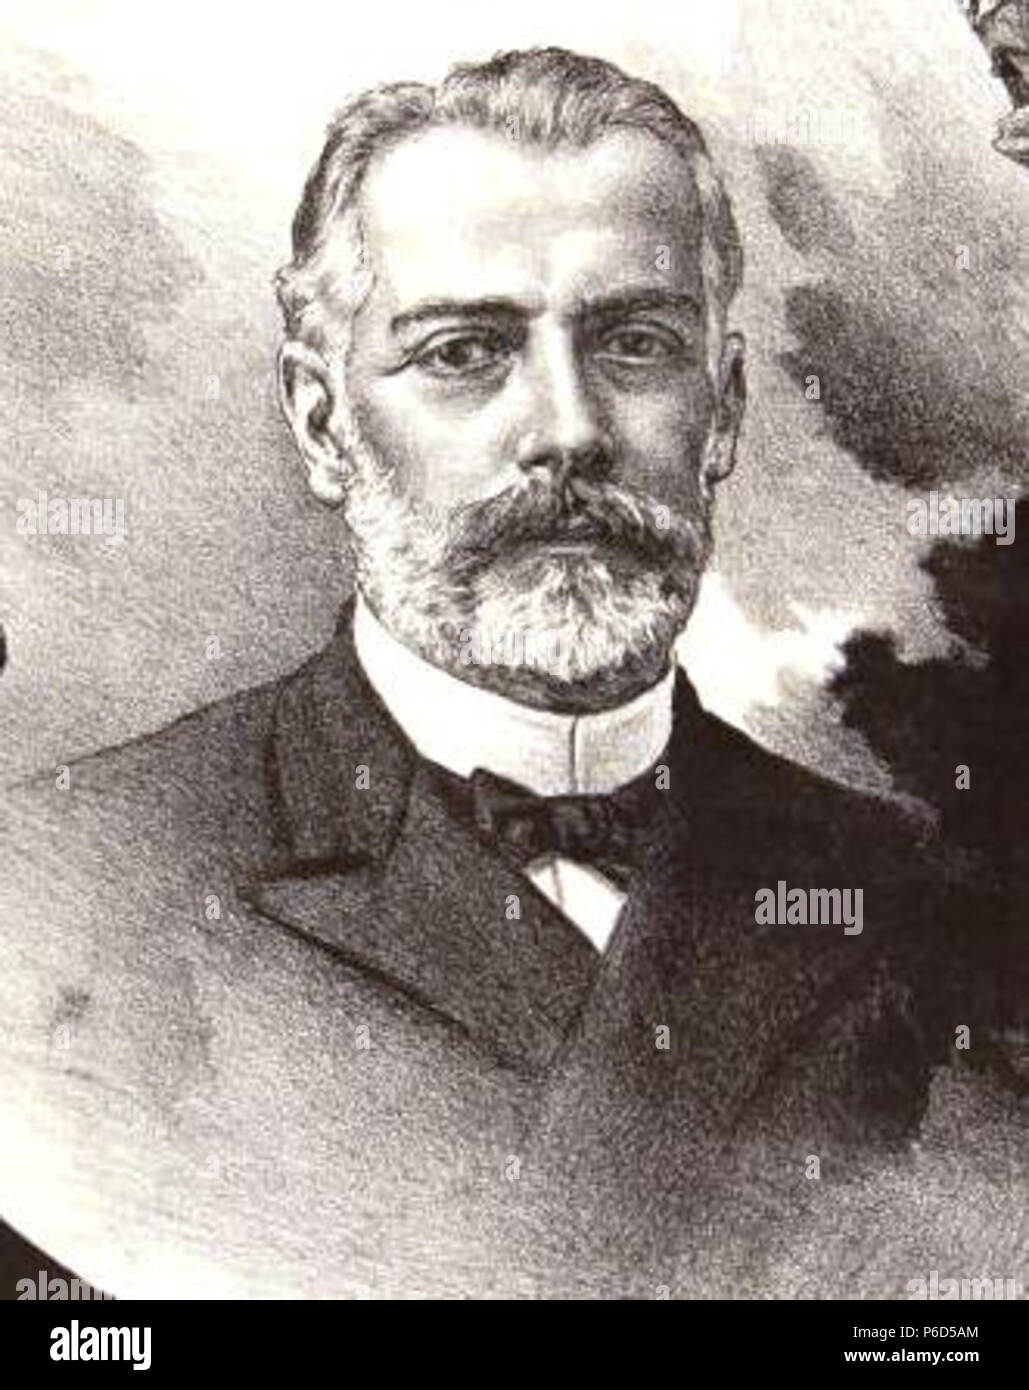 Español: Manuel Antonio Caro (Valparaíso 1835 - †1903); pintor chileno, representante del realismo academicista. 1903 62 Manuel Antonio Caro-LLCh cropped Stock Photo